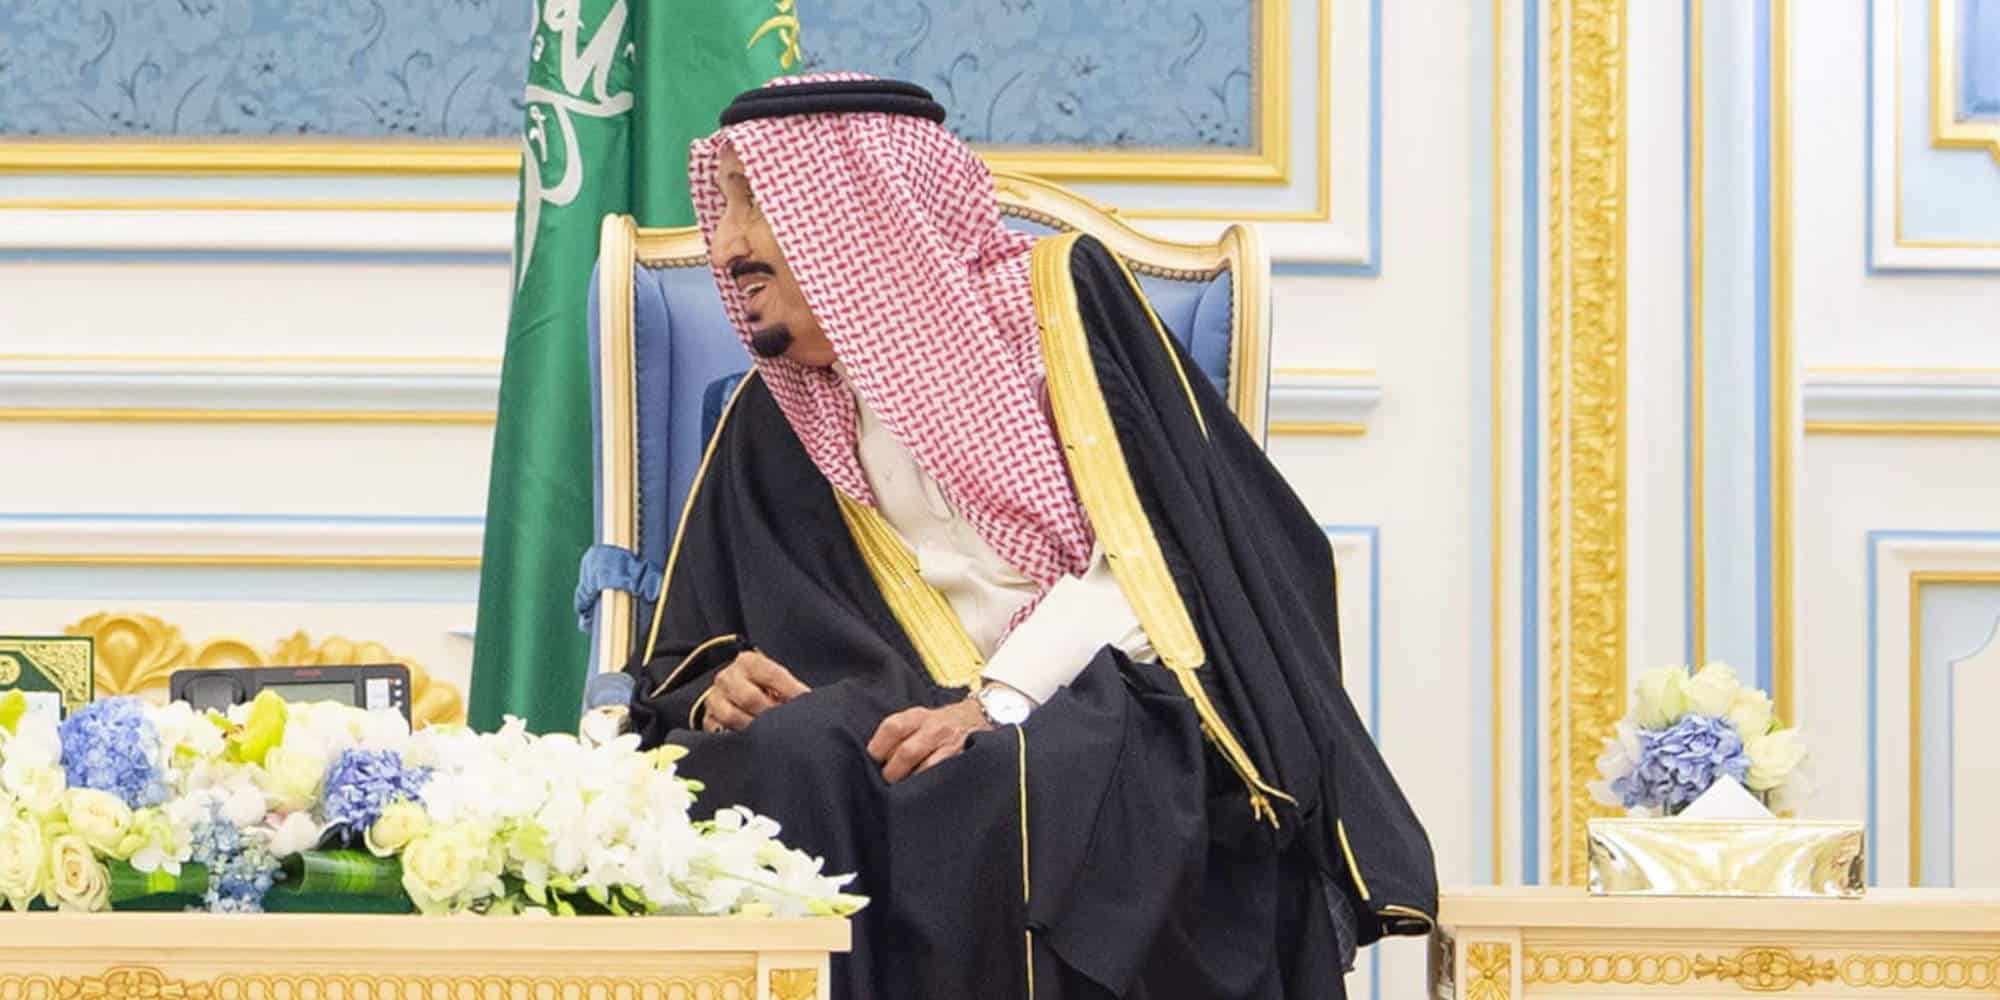 Ο πρίγκιπας Διάδοχος του θρόνου της Σαουδικής Αραβίας, Μοχάμεντ μπιν Σαλμάν μπιν Αμπντουλαζίζ Αλ Σαούντ